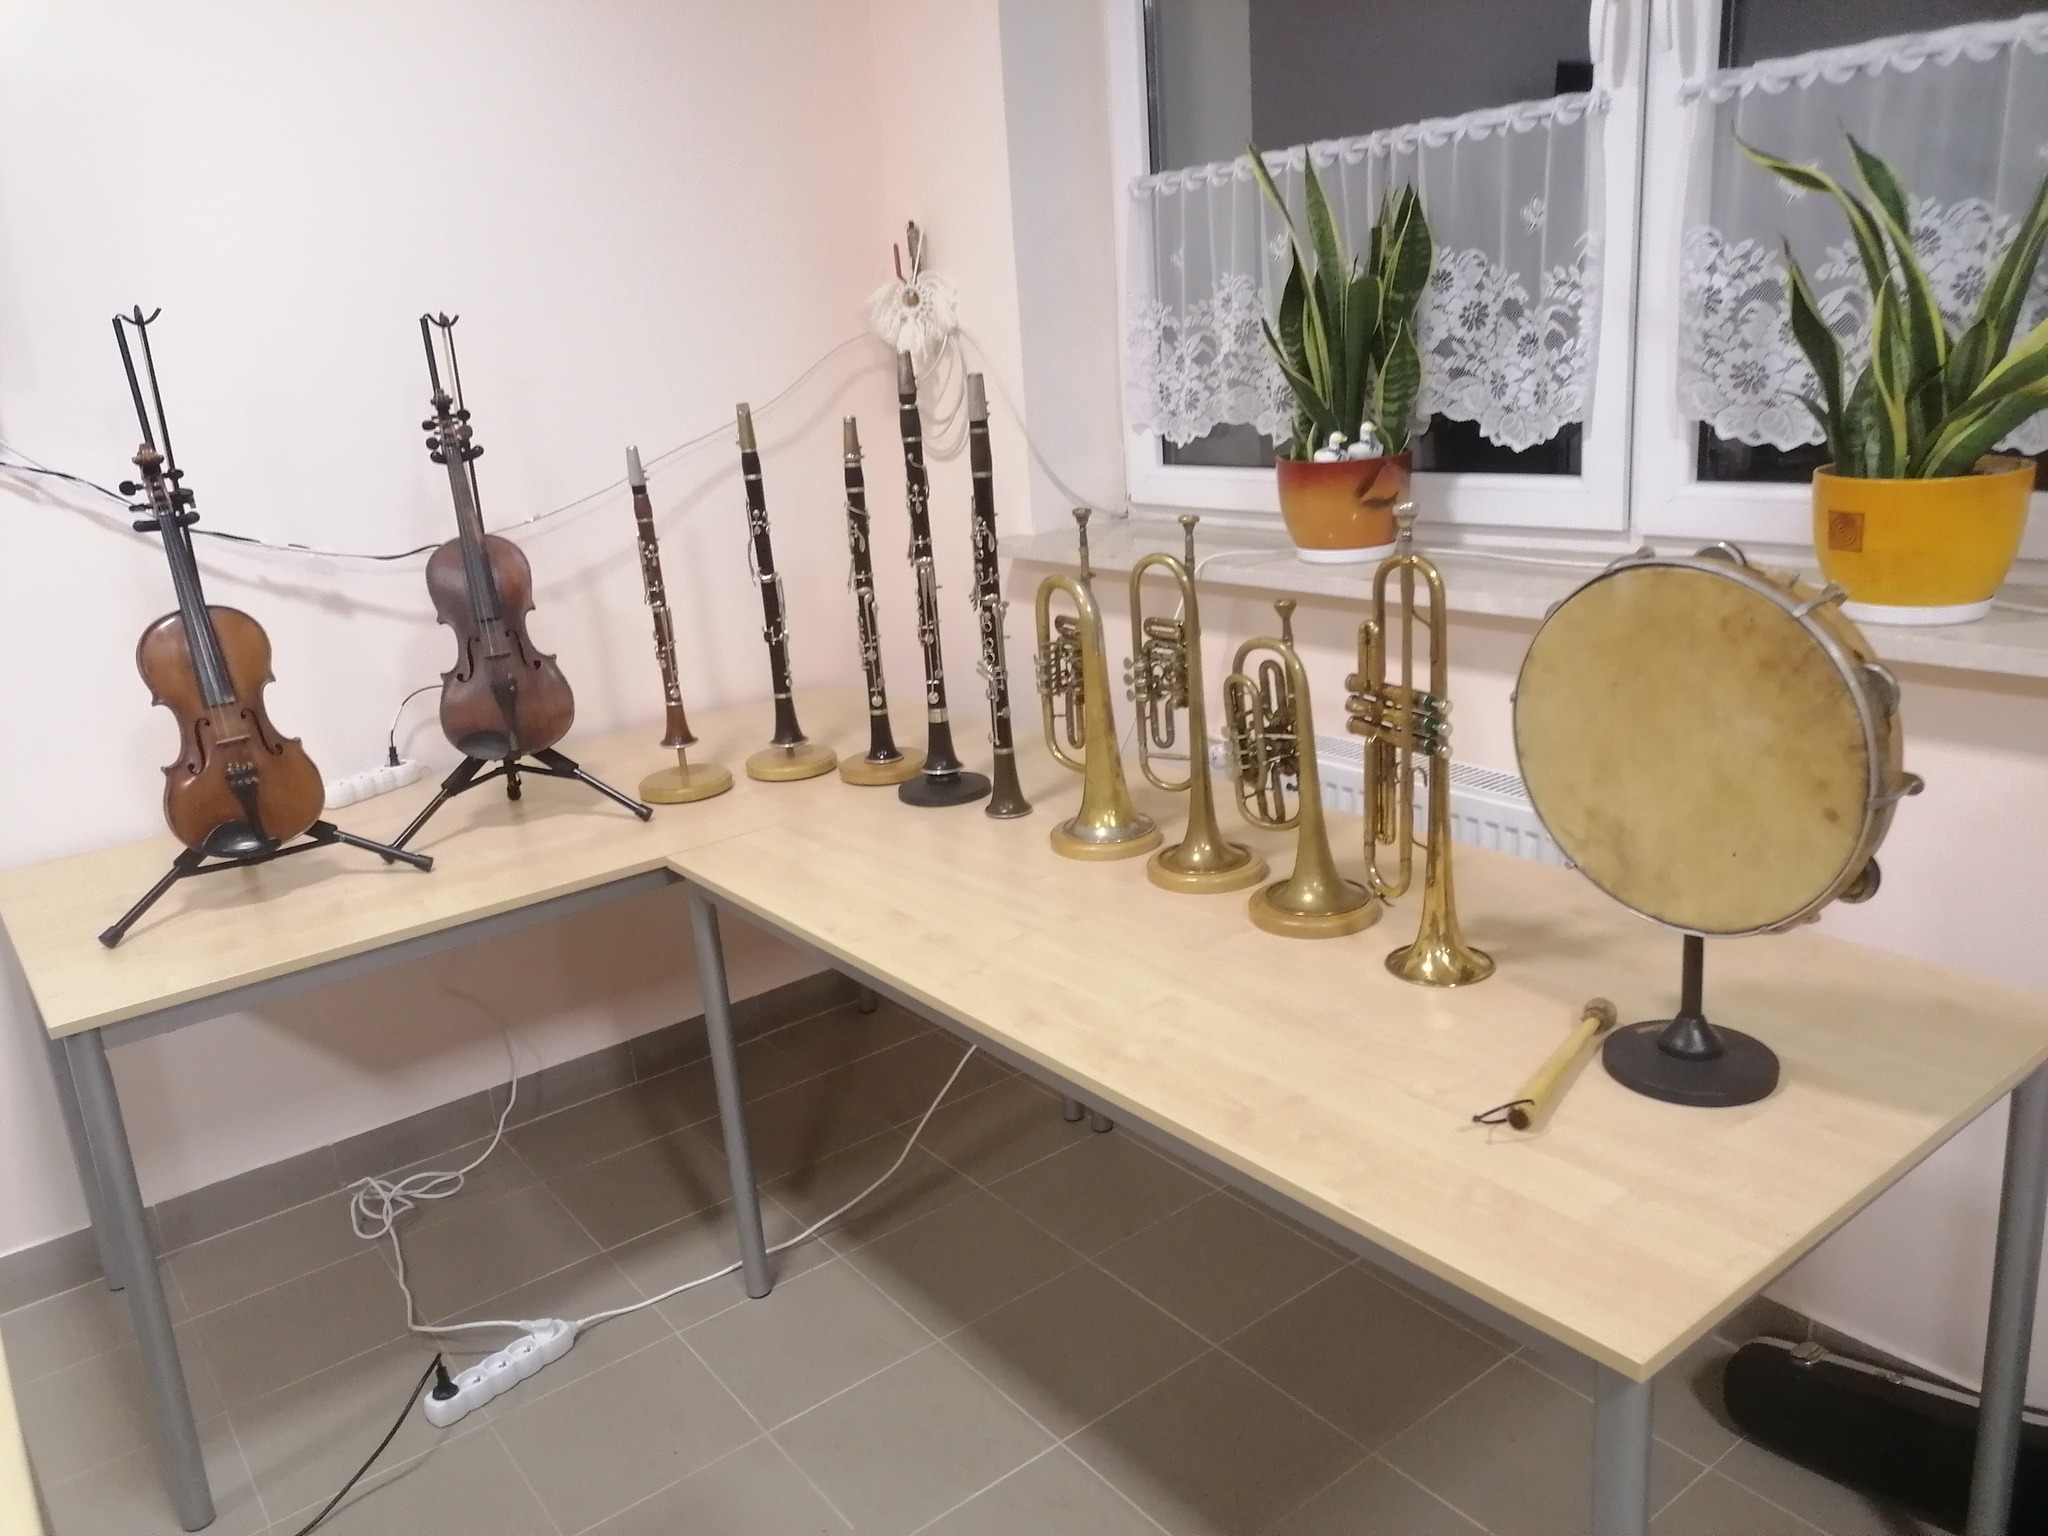 instrumenty